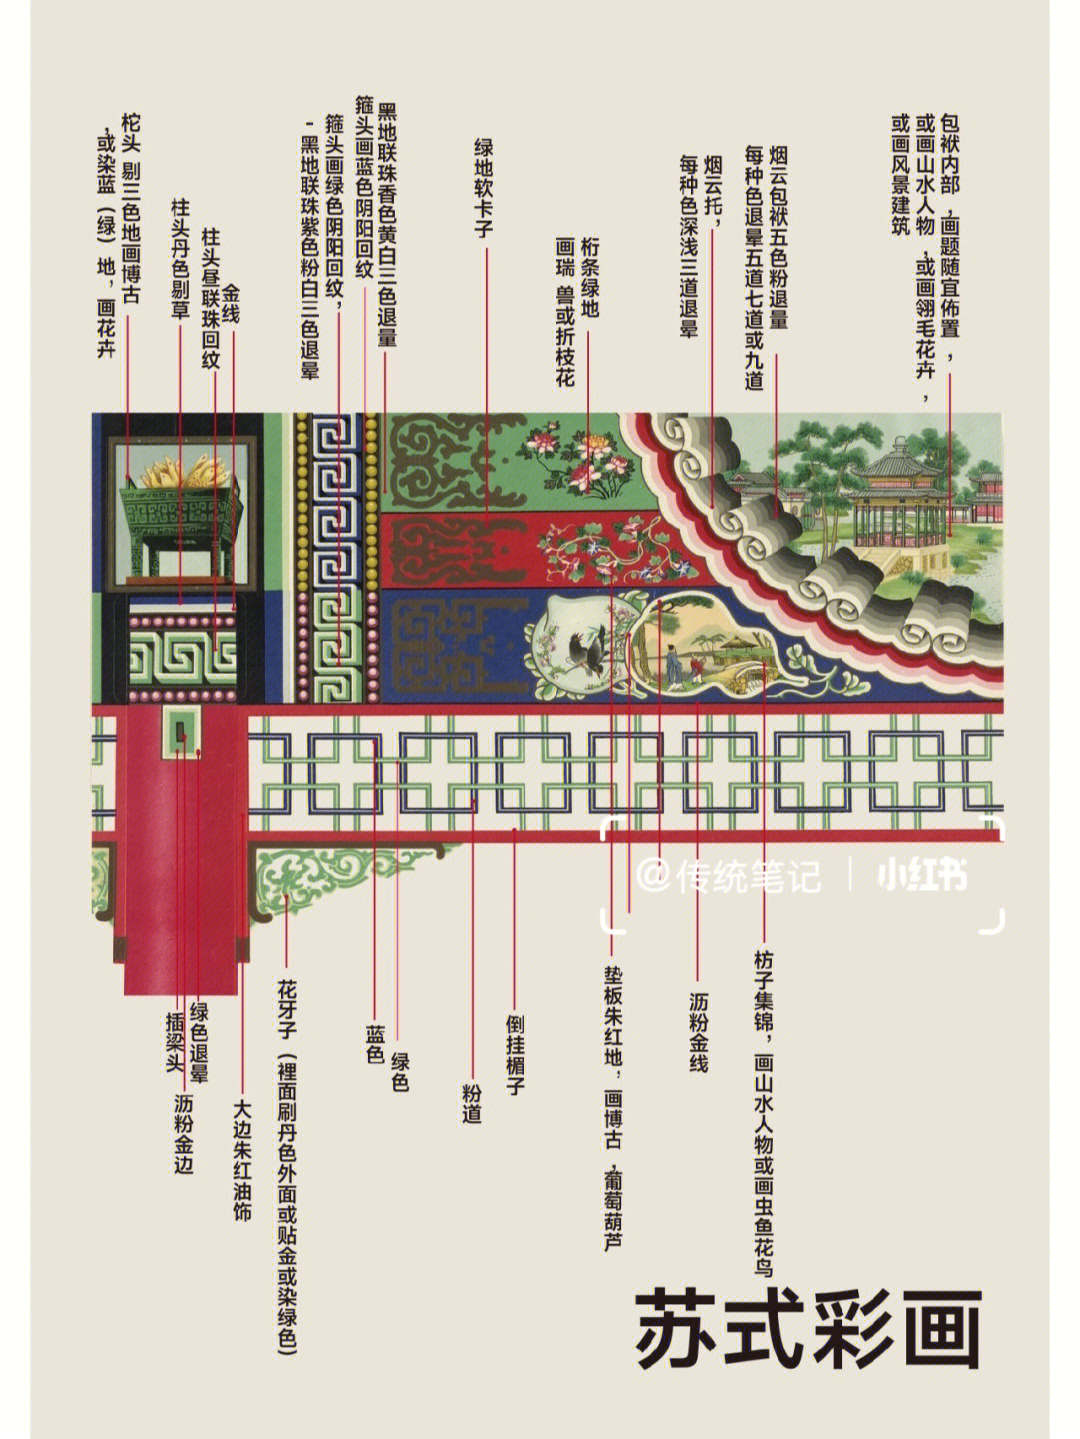 详解中国古建筑彩画(下)7815强烈建议收藏